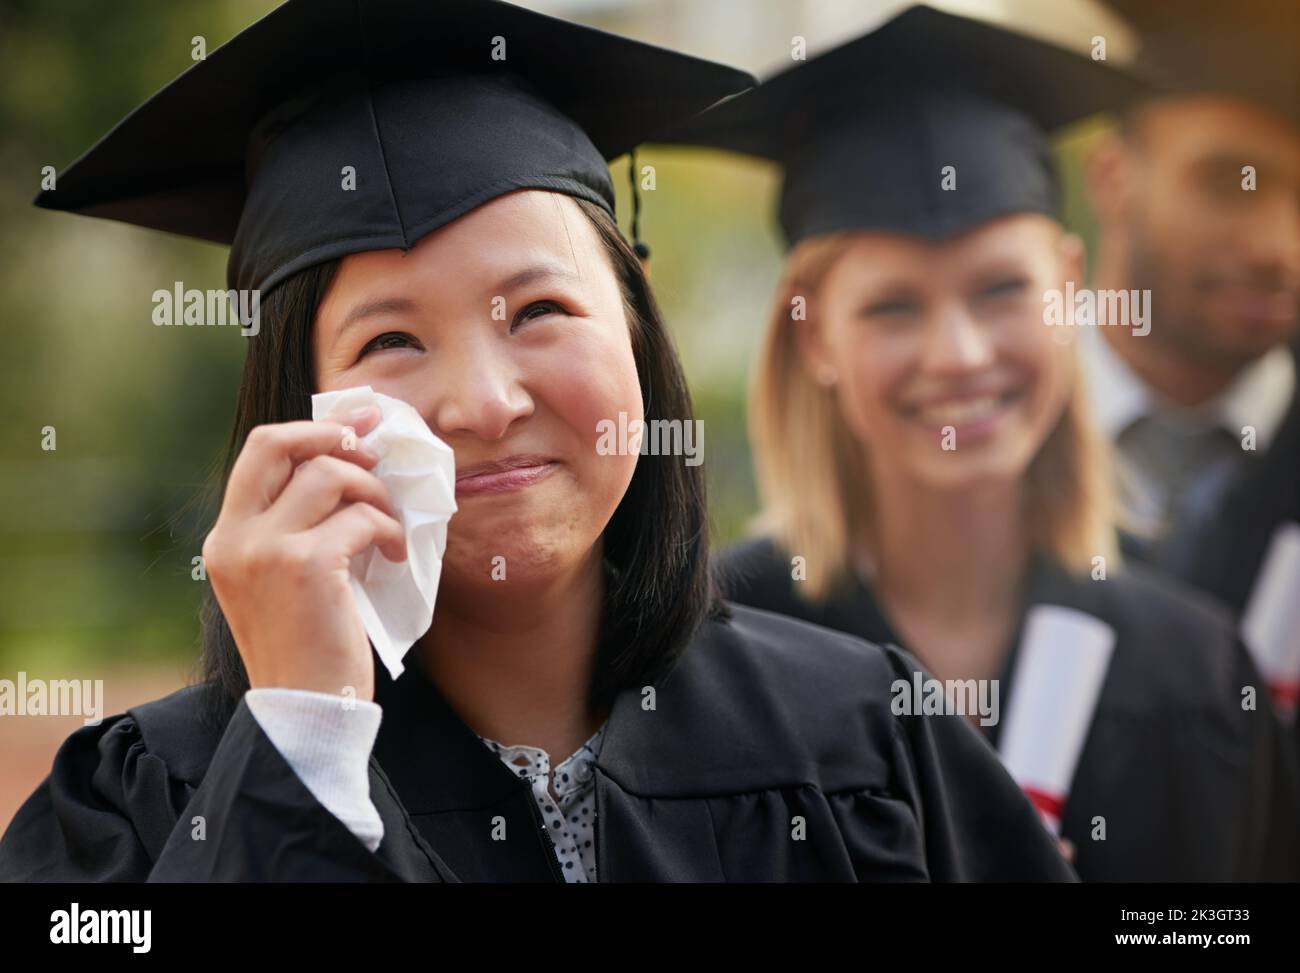 Soyez fier de votre chemin. Un jeune diplômé ecstatique se déversant des larmes de joie à sa graduation. Banque D'Images